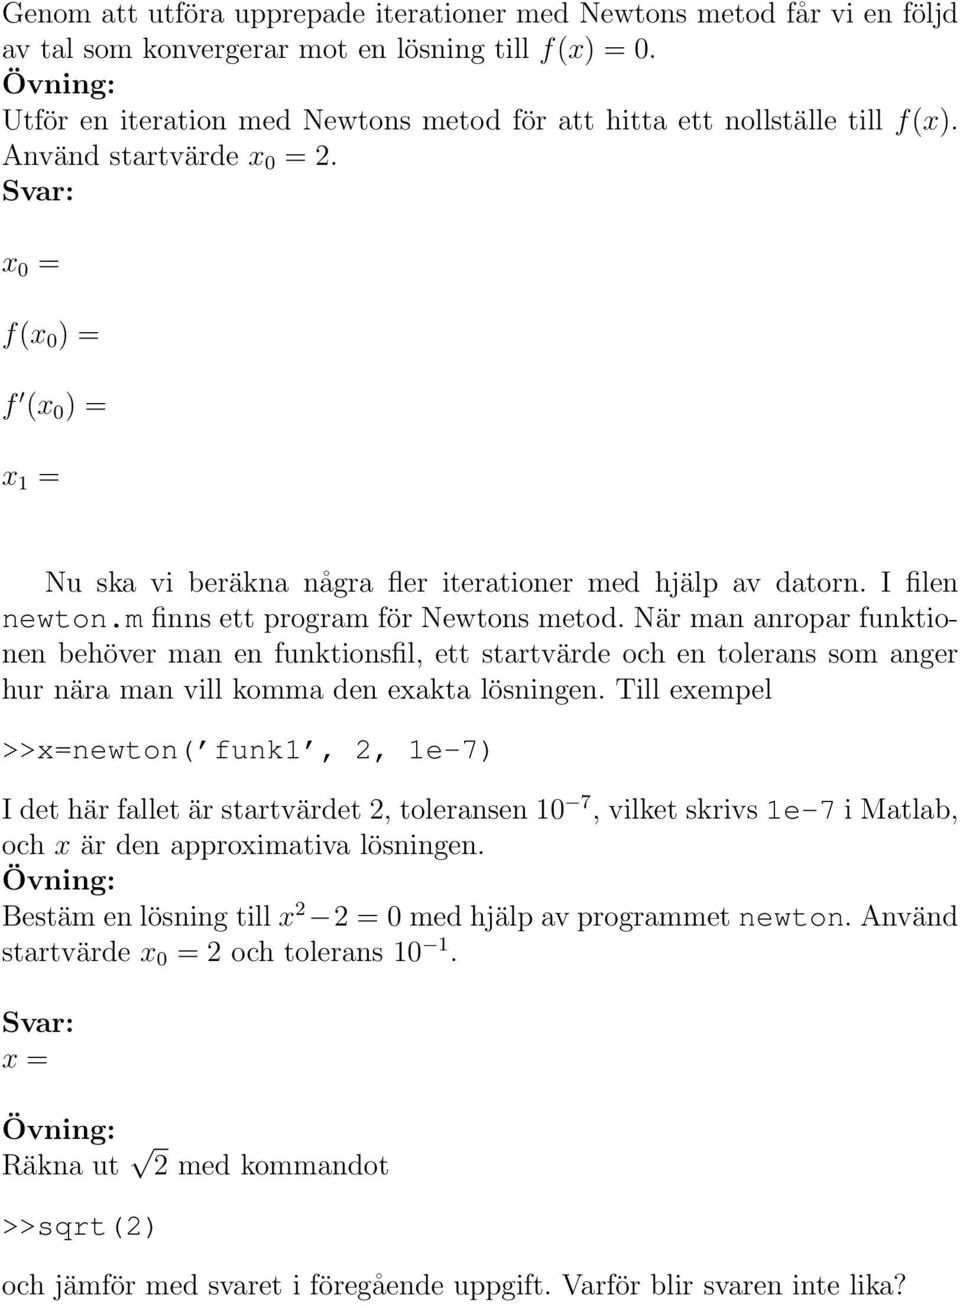 I filen newton.m finns ett program för Newtons metod. När man anropar funktionen behöver man en funktionsfil, ett startvärde och en tolerans som anger hur nära man vill komma den exakta lösningen.